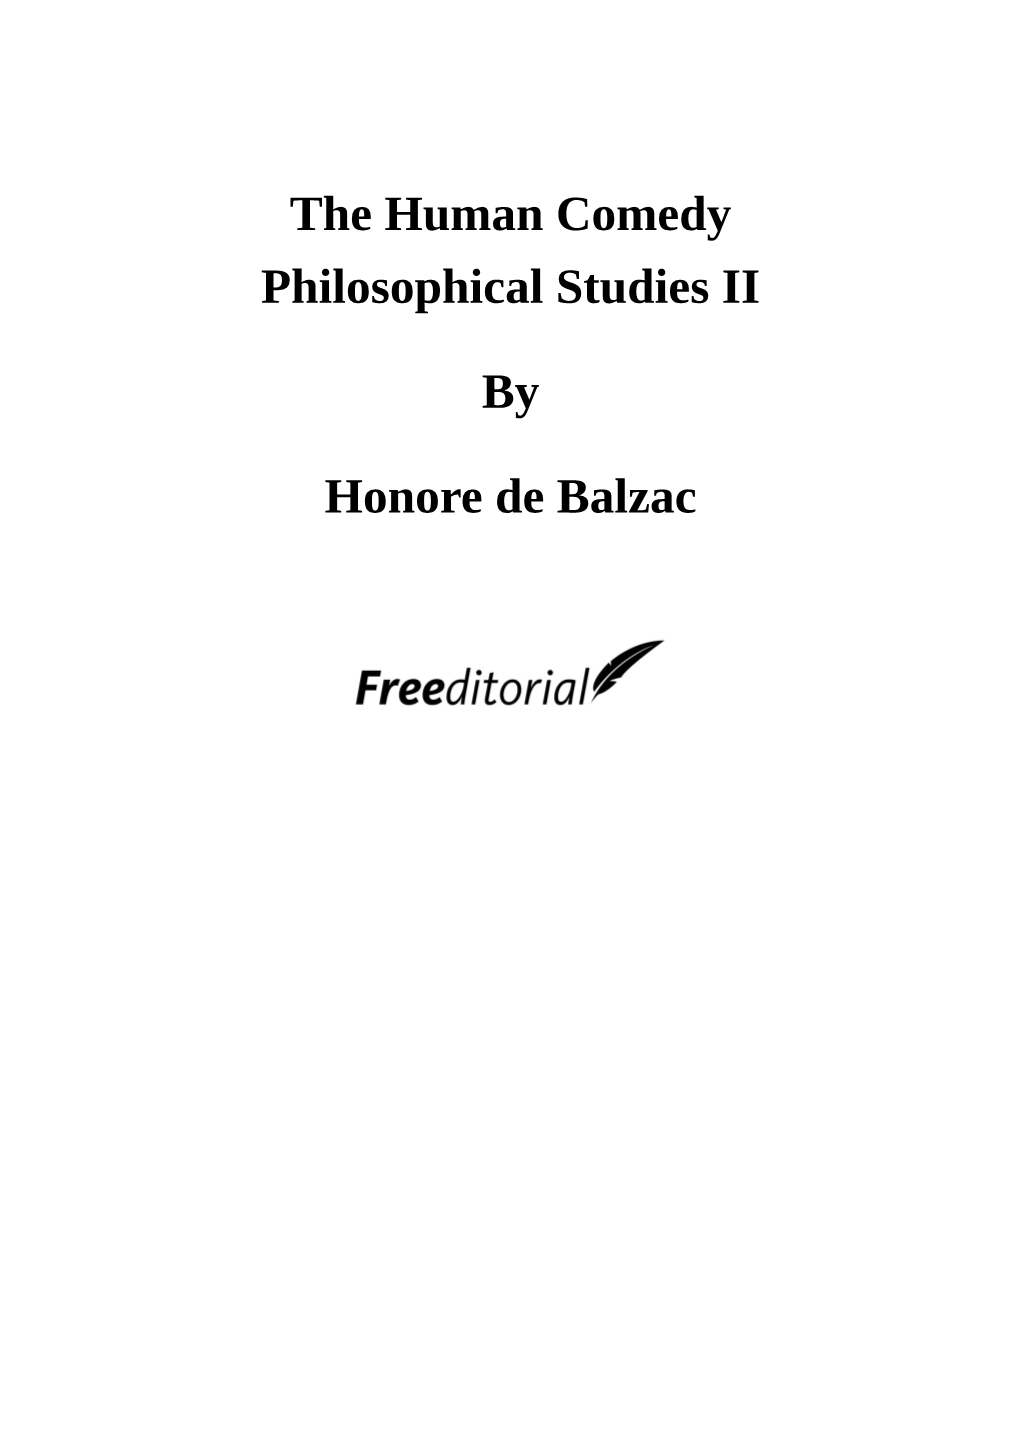 The Human Comedy. Philosophical Studies II